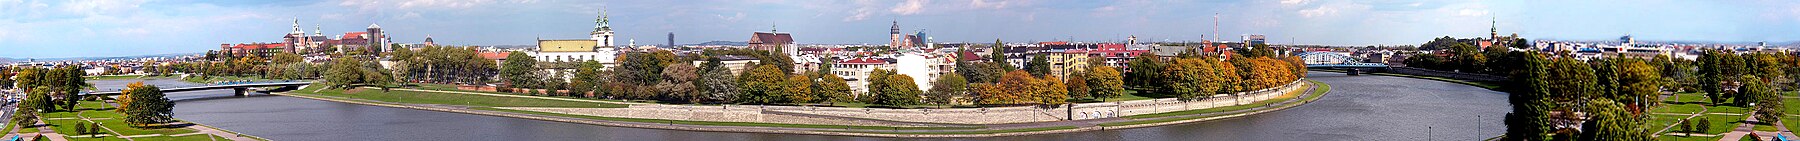 Panorama över Krakow från Forum Hotel.jpg